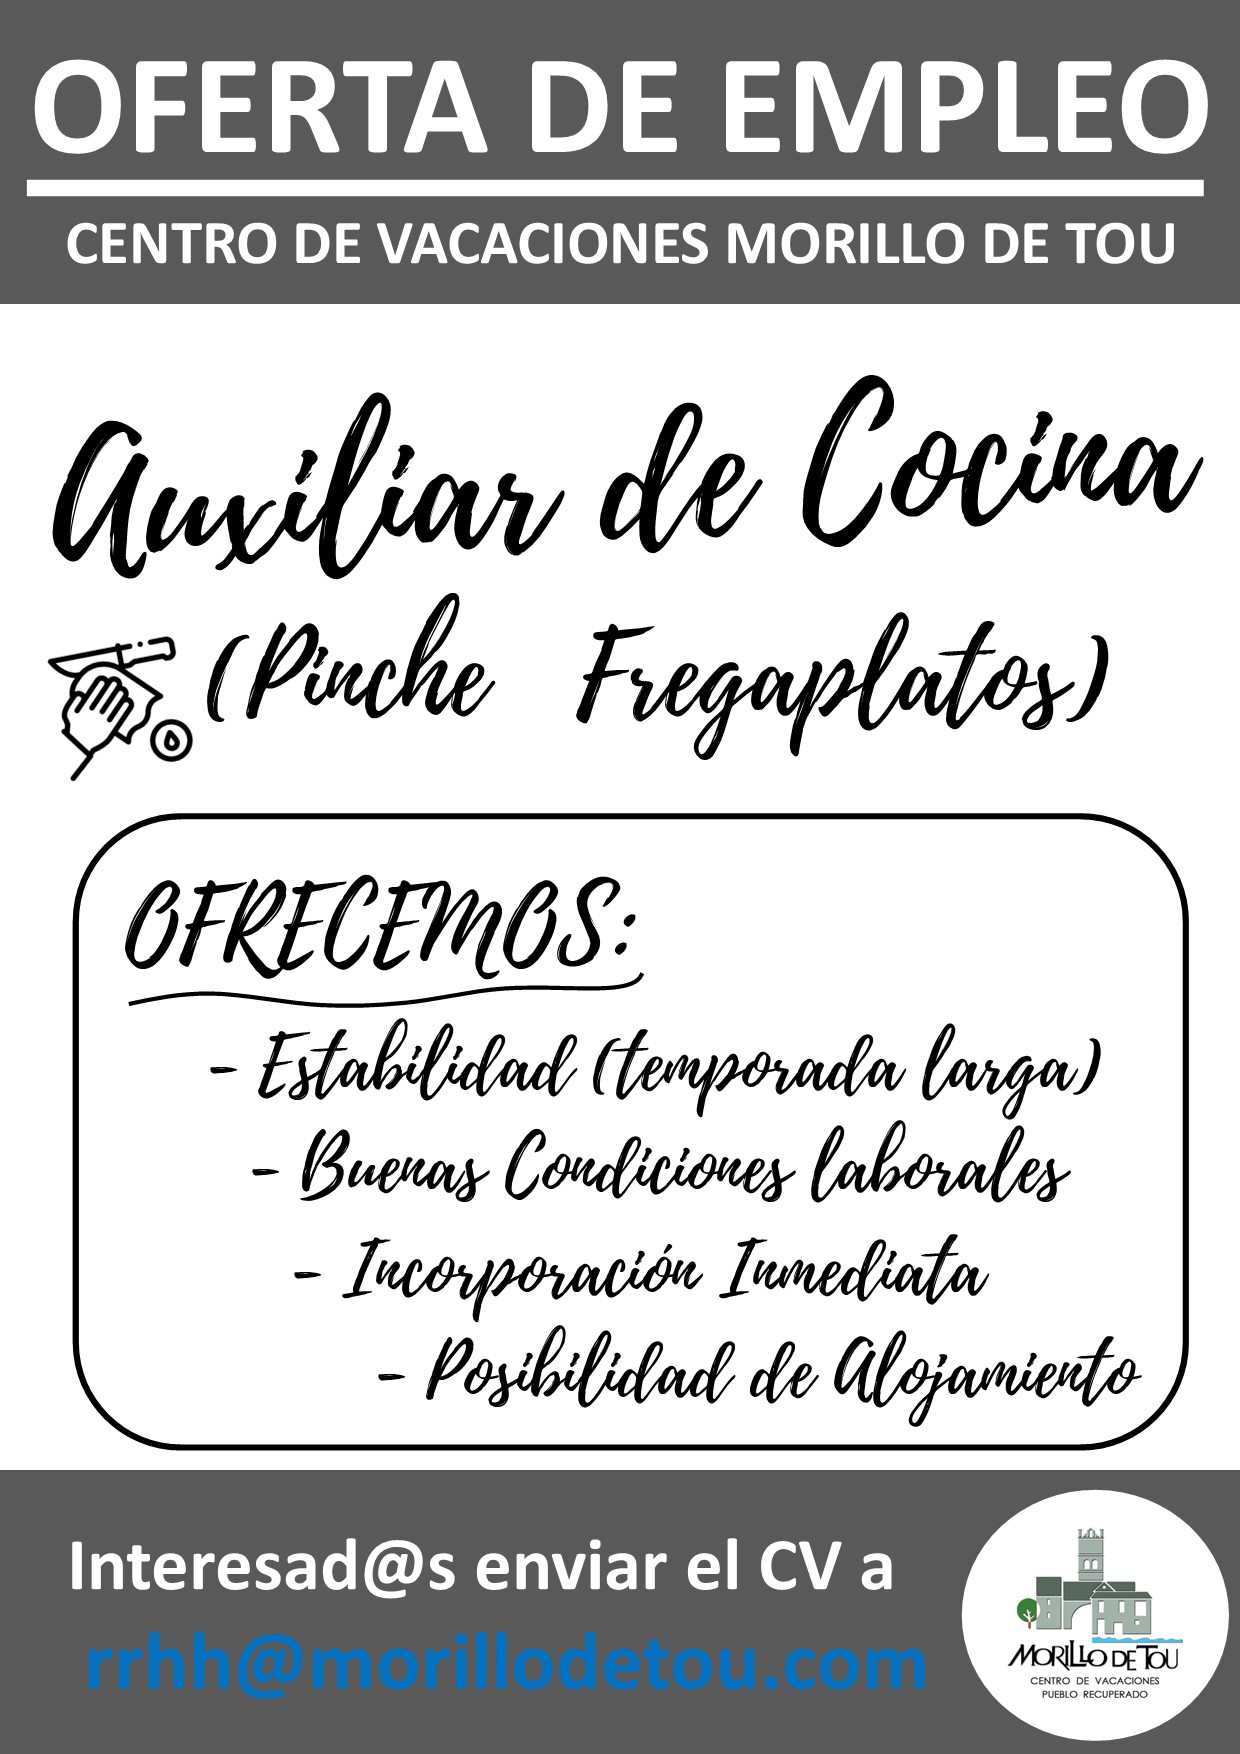 SE BUSCA AUXILILAR DE COCINA (Pinche Fregaplatos) - CENTRO DE VACACIONES MORILLO DE TOU